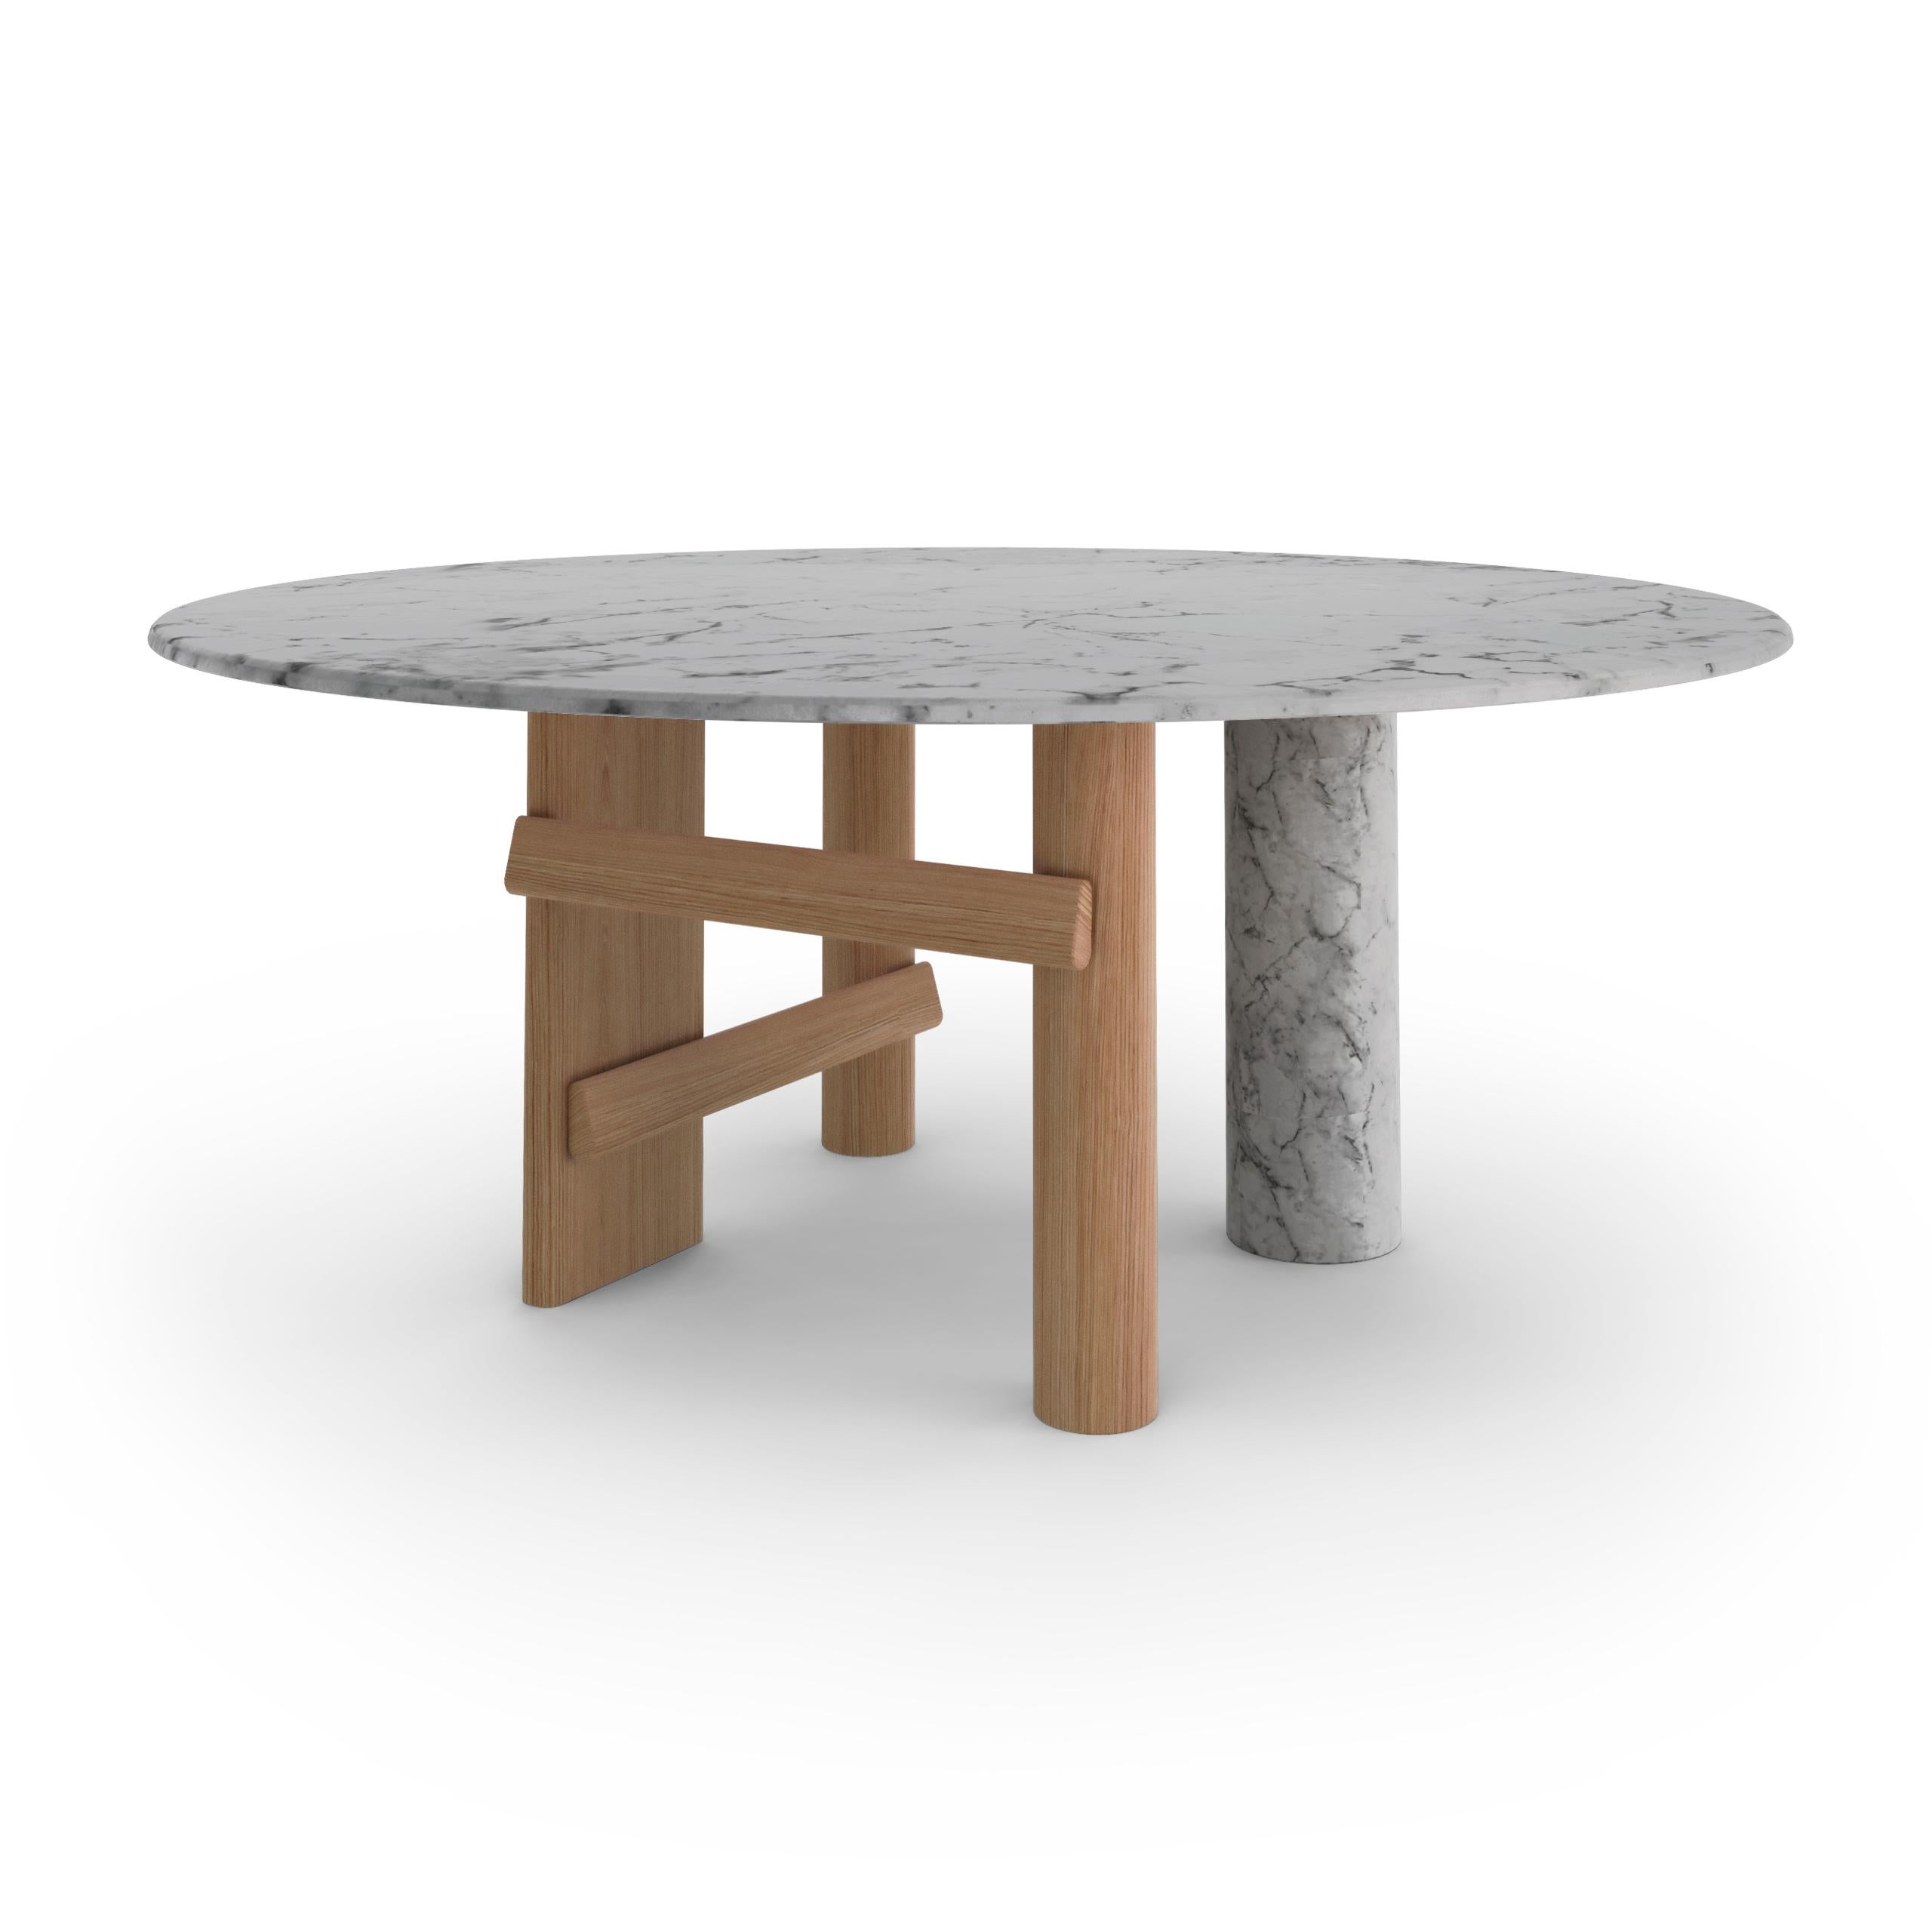 Table de salle à manger Sengu conçue par Patricia Urquiola.
Fabriqué par Cassina (Italie).

POÉSIE LÉGÈRE
Une table de salle à manger design inspirée par la reconstruction rituelle des sanctuaires japonais, une pièce contemporaine qui célèbre la